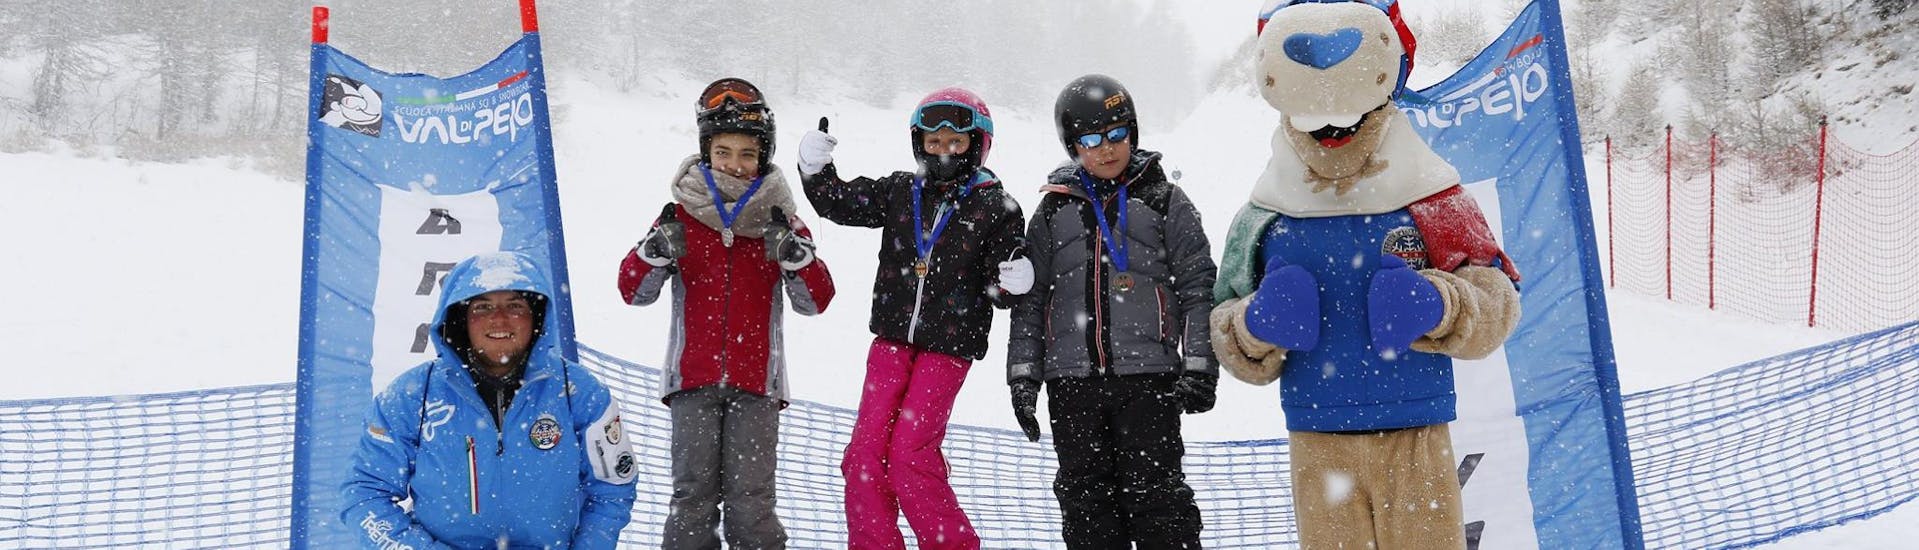 Kinderen worden beloond na de skilessen voor kinderen (7-17 jaar) voor gevorderde skiërs - hele dag met Scuola Sci e Snowboard Val di Pejo.